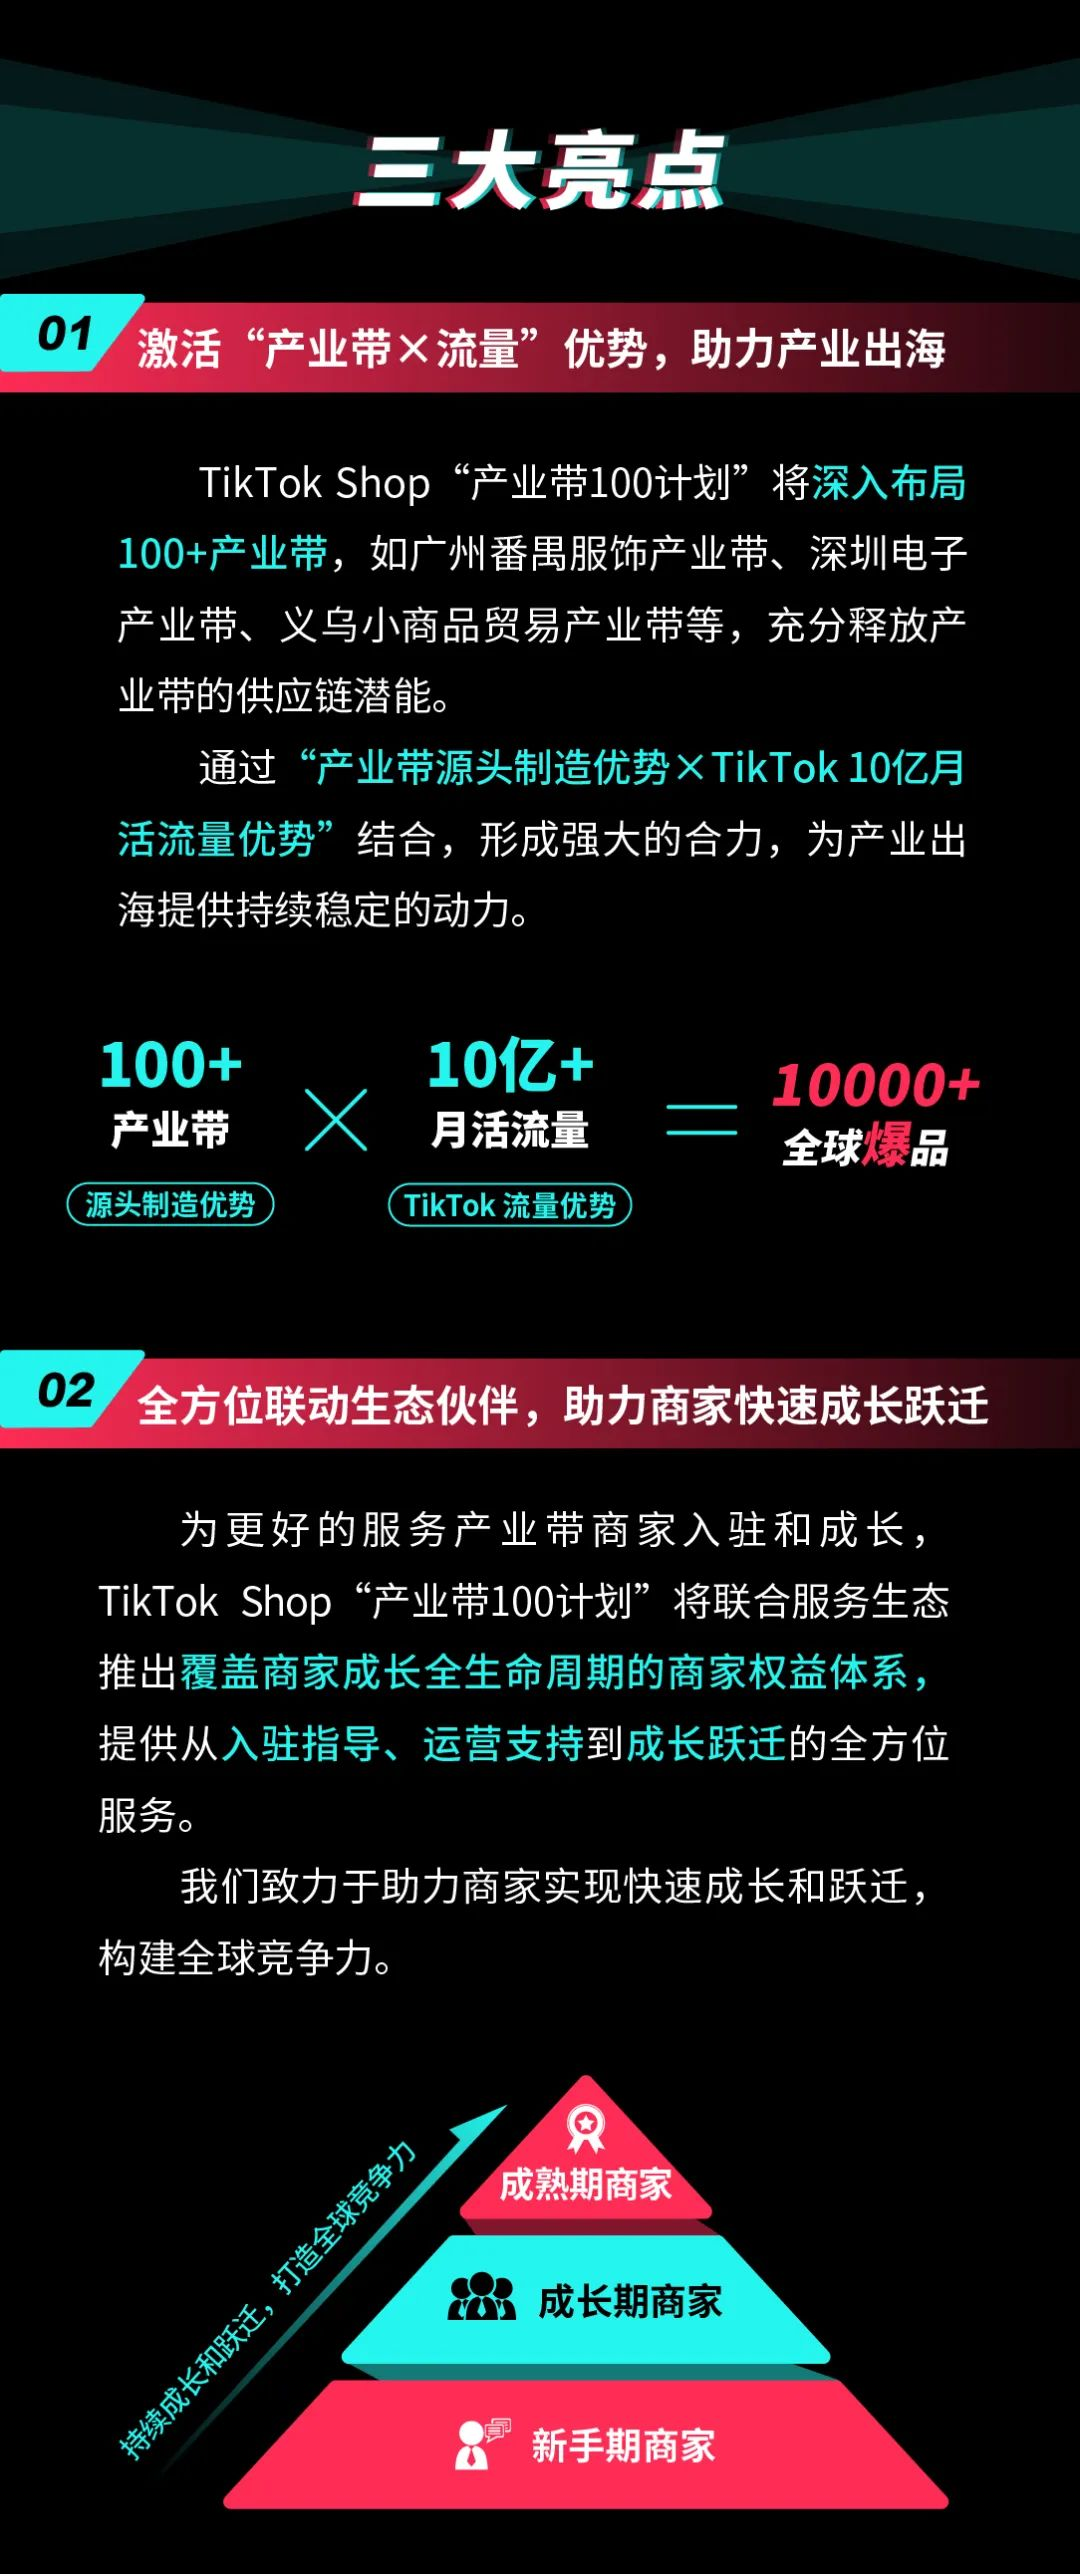 TikTok Shop跨境电商重磅推出“产业带100计划”！